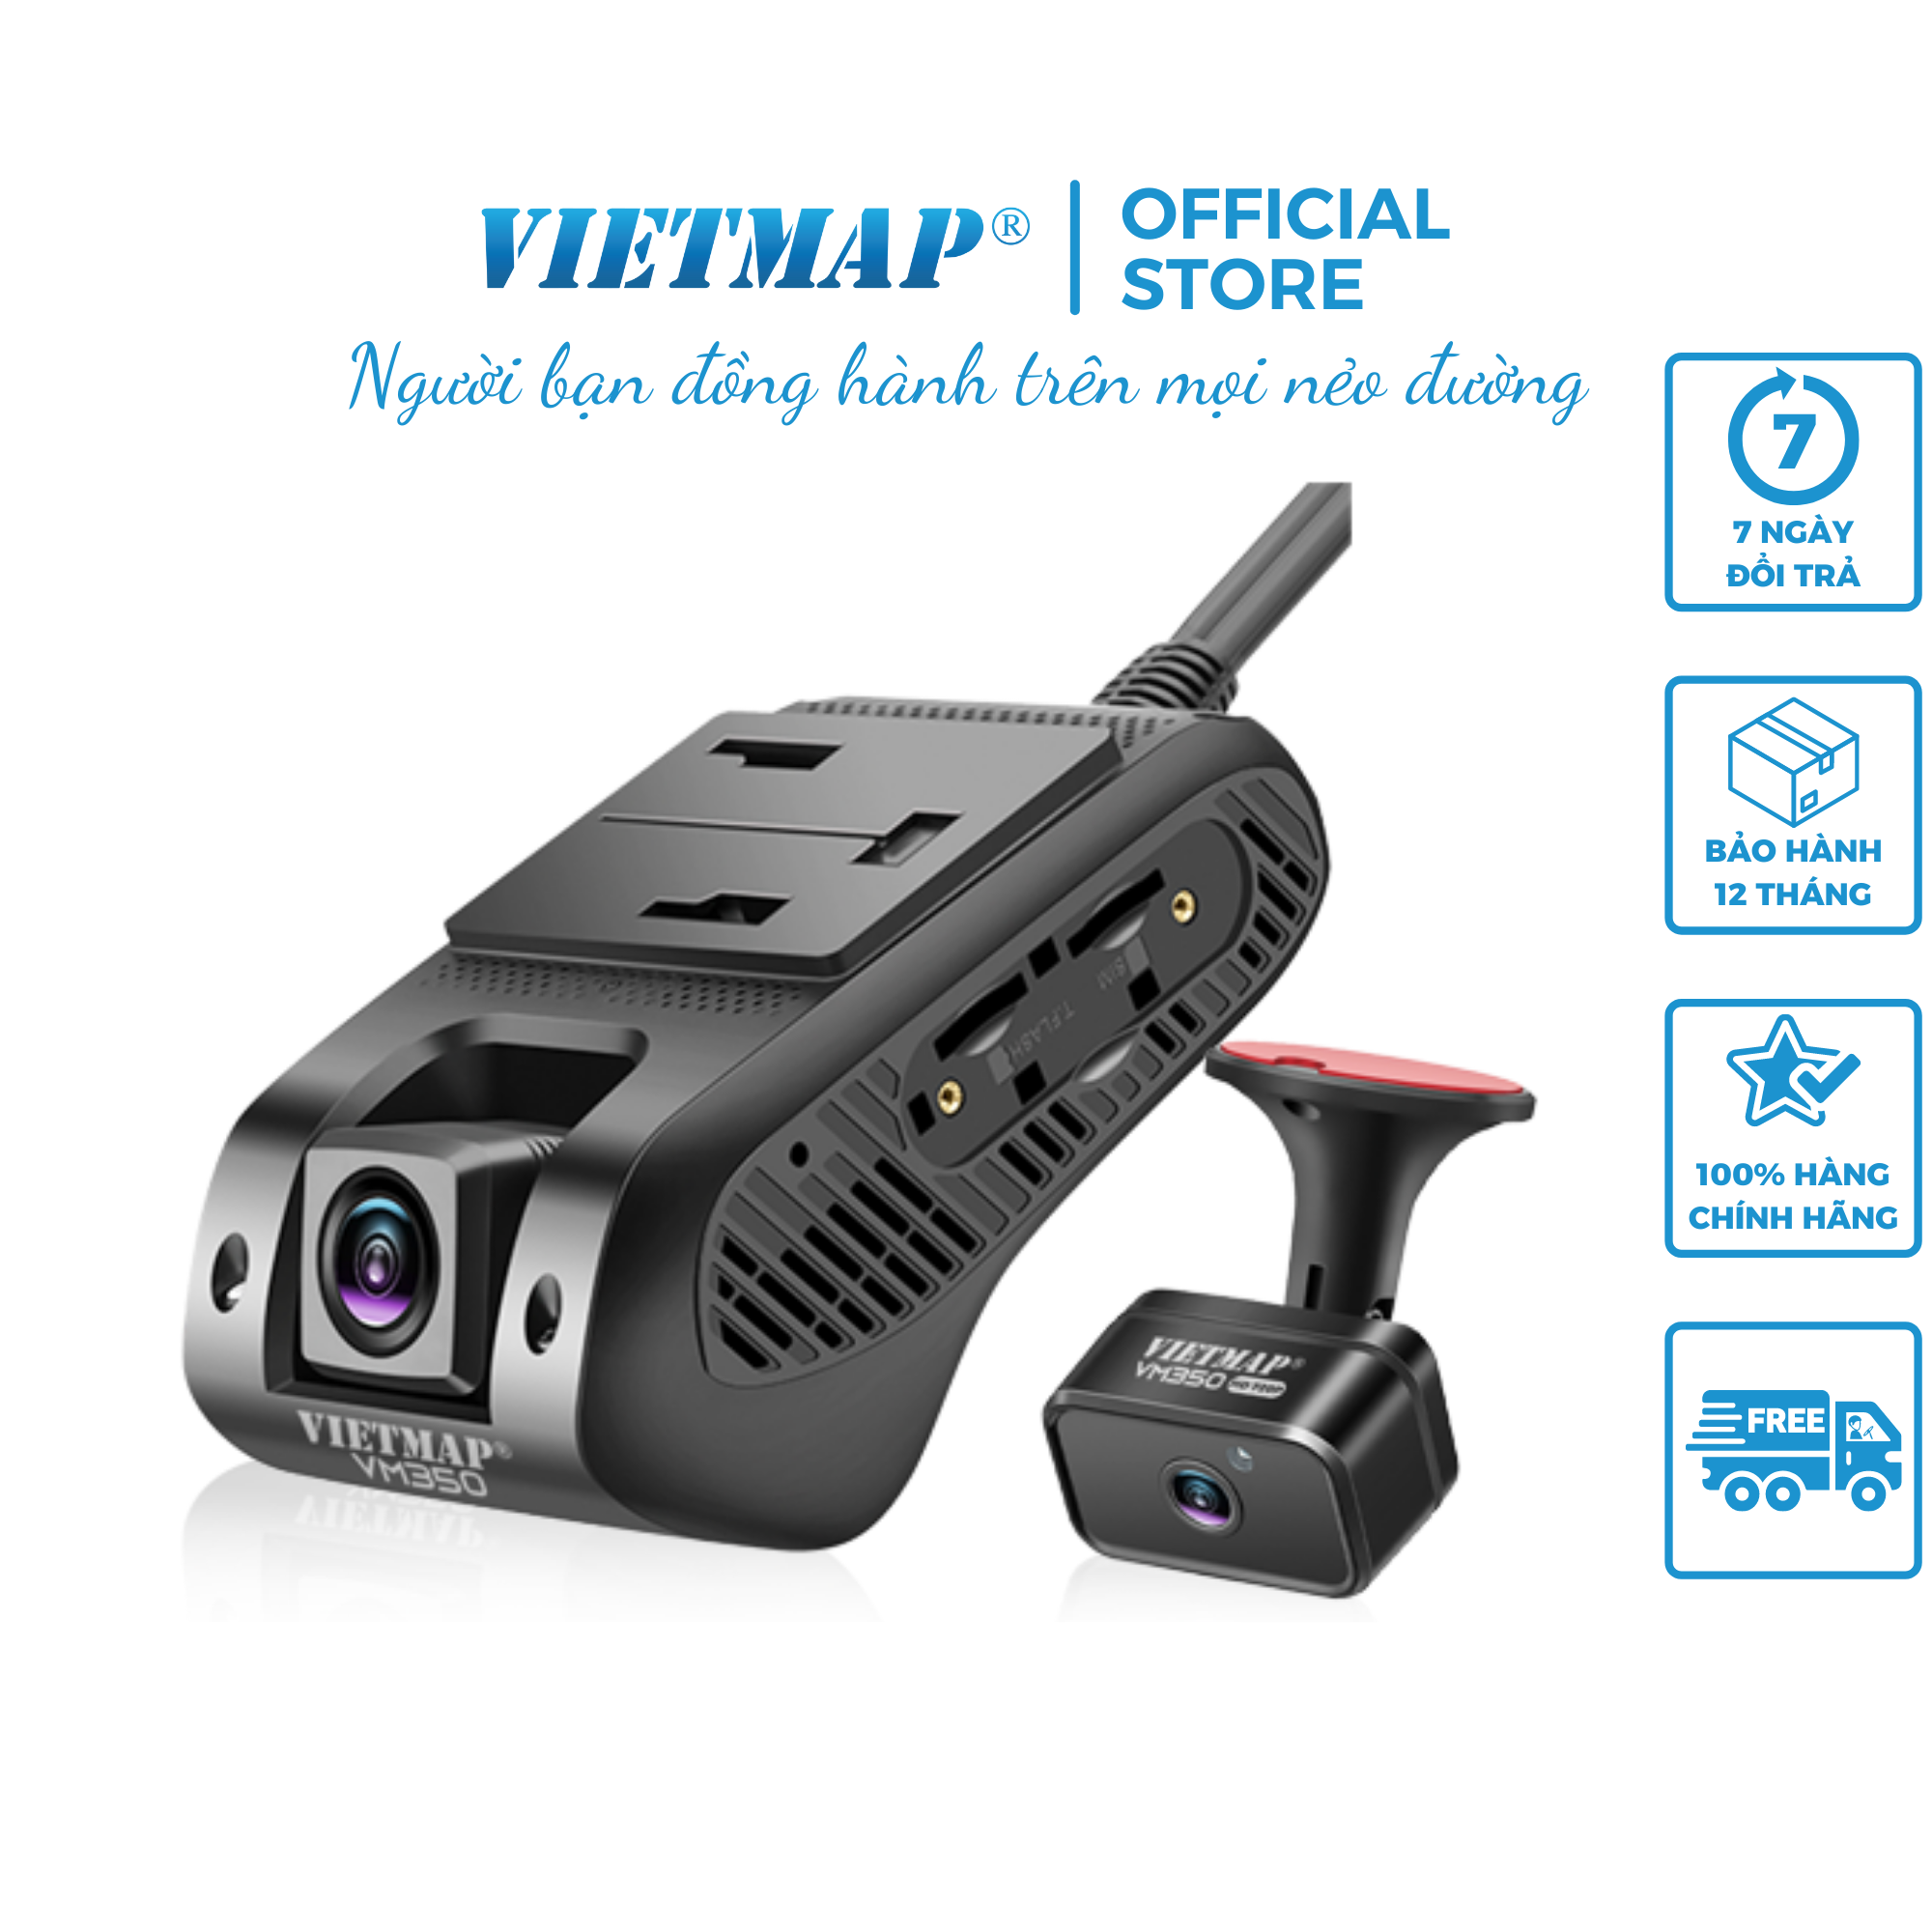 Camera hành trình Vietmap VM350 - Camera hợp chuẩn NĐ10/2020 - Hàng chính hãng